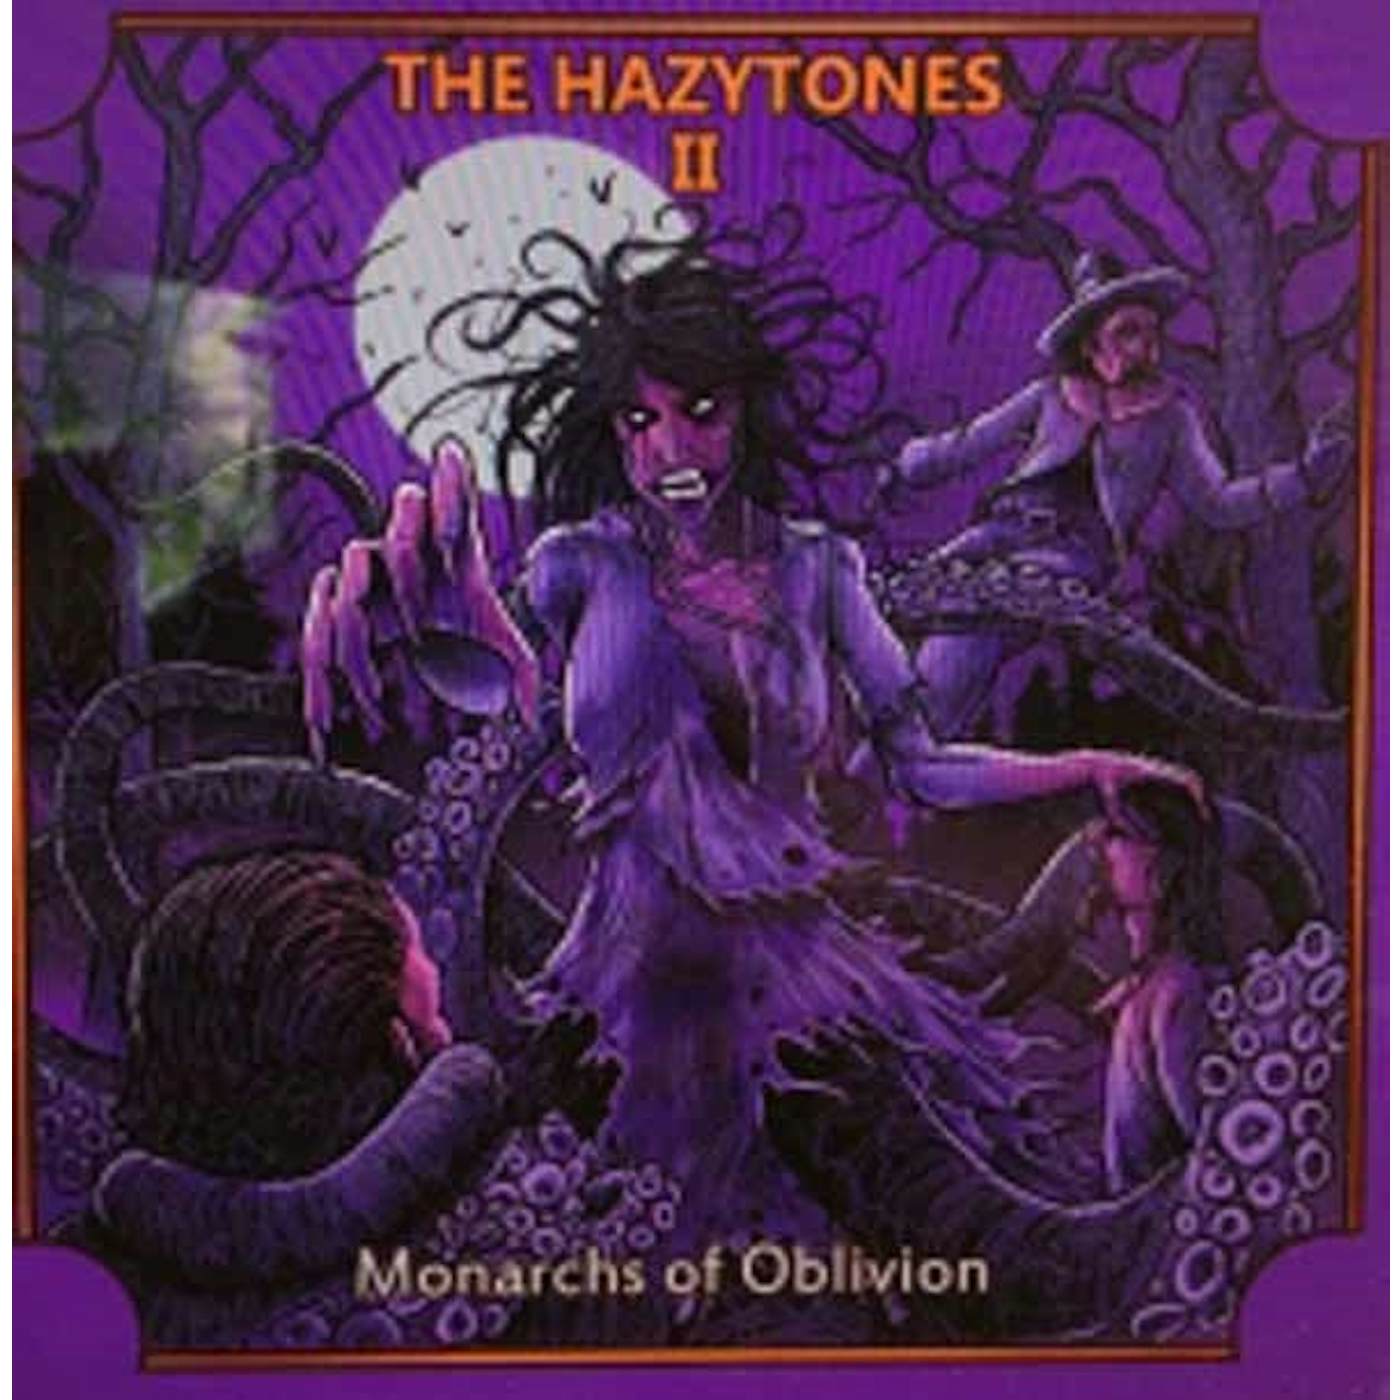 The Hazytones LP - The Hazytones Ii: Monarchs Of Oblivion (Vinyl)